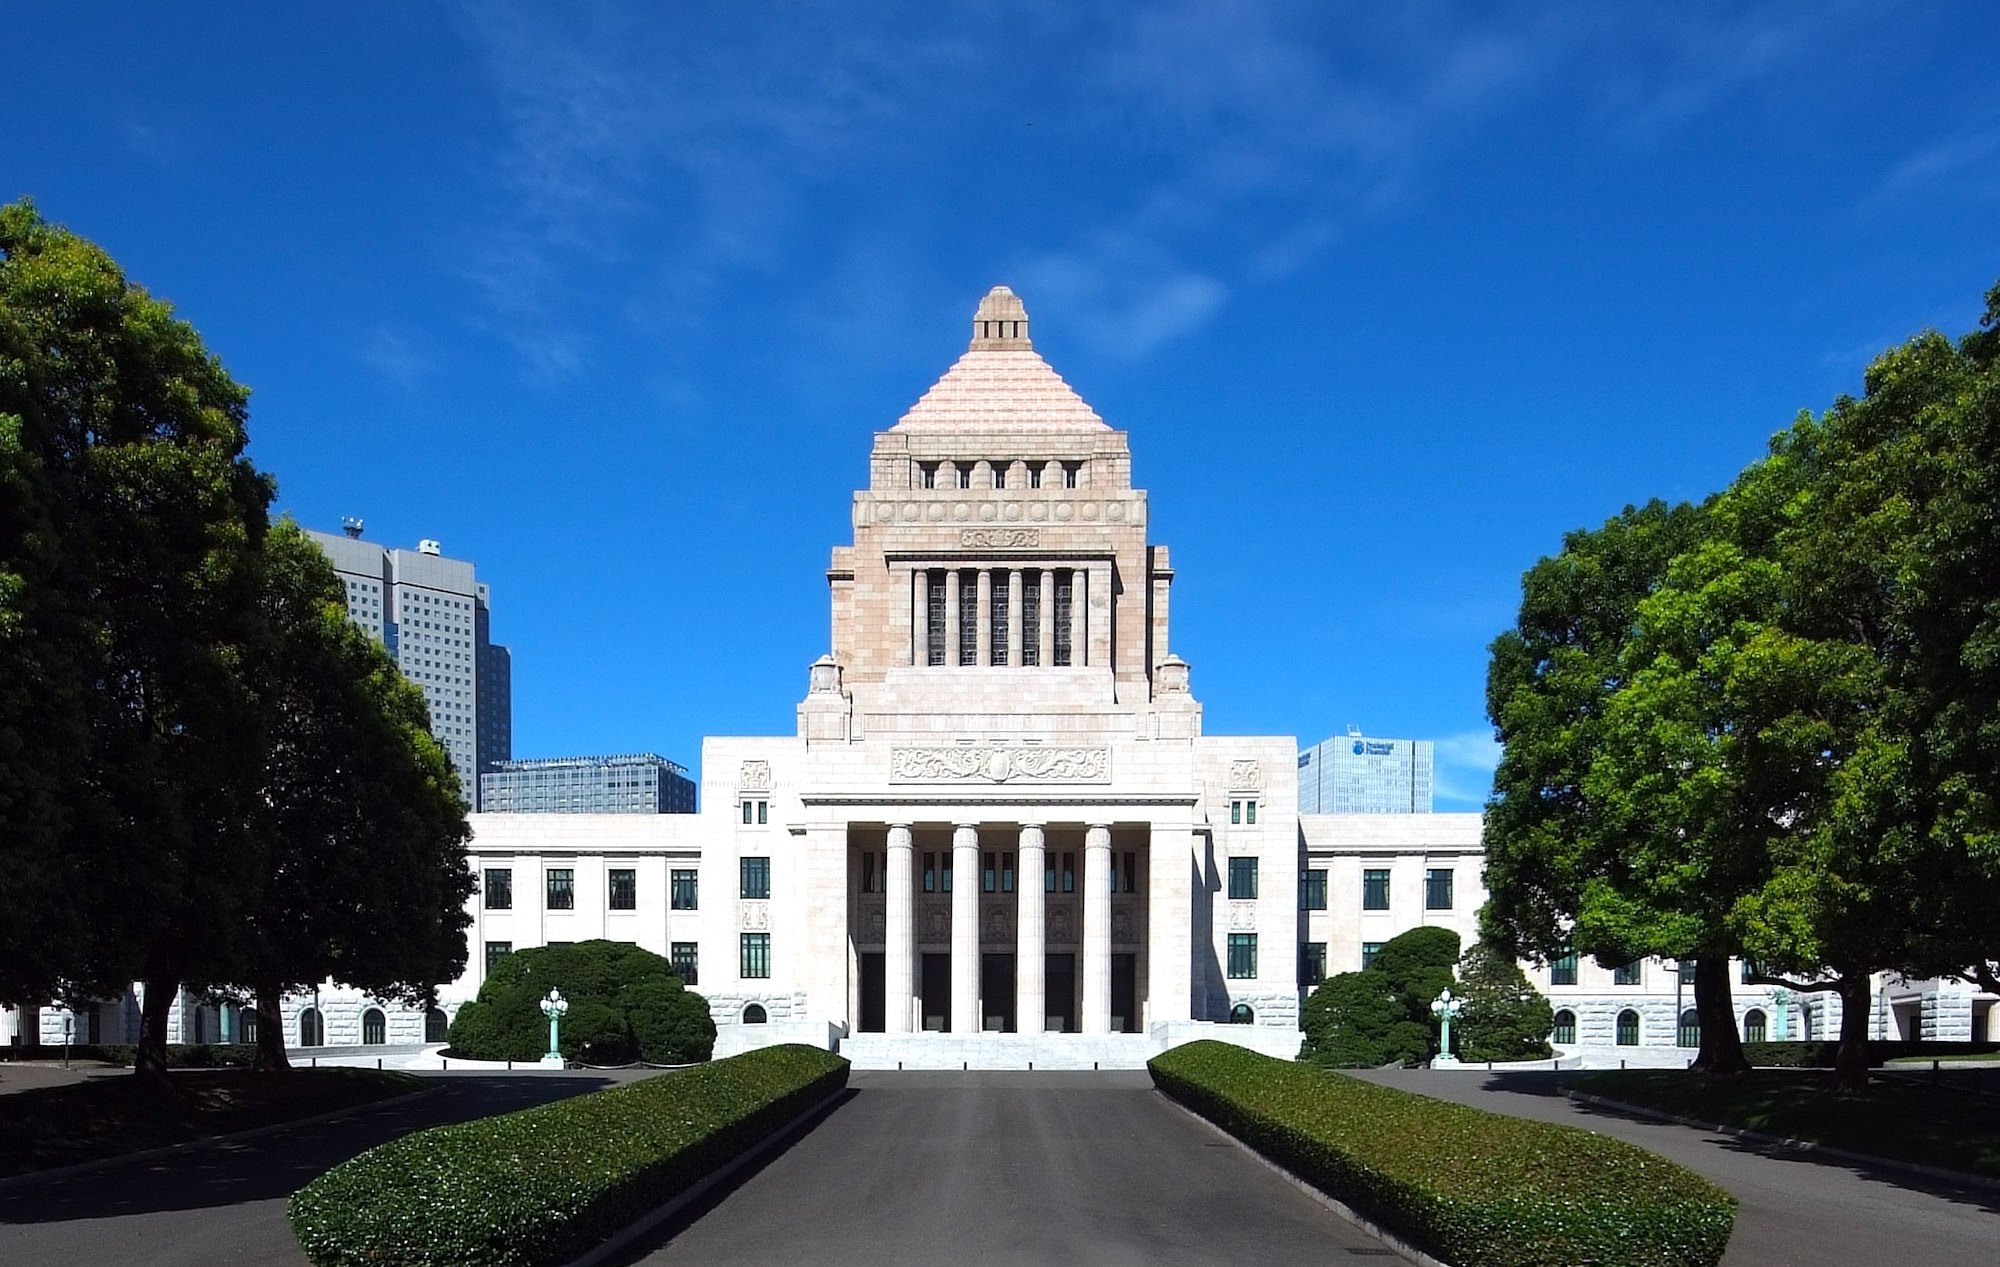 El 'Palacio de la Dieta' de Tokio nada tiene que ver con el sushi. Por qué uno de los edificios más importantes de Japón recibe este nombre